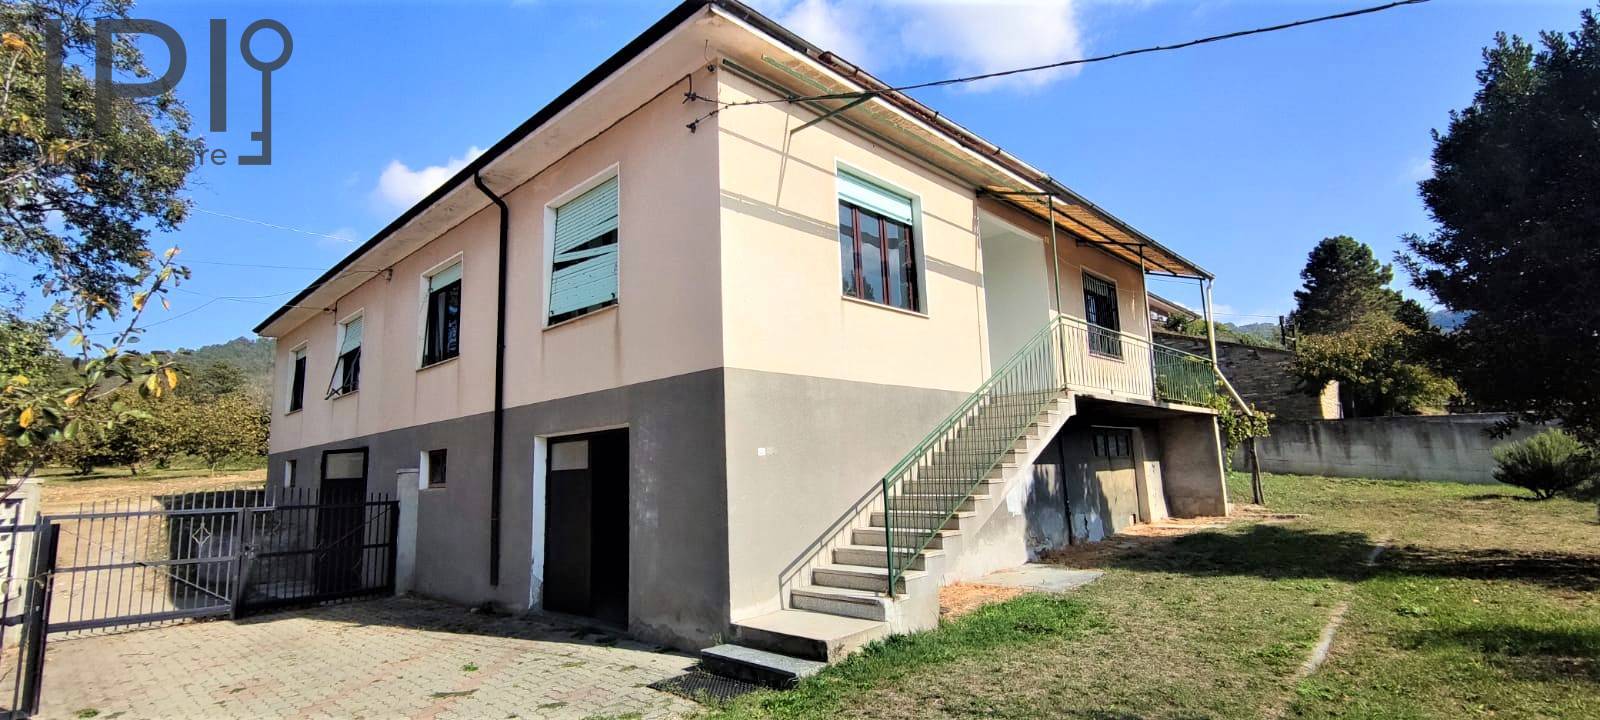 Villa in vendita a Montechiaro d'Acqui, 6 locali, prezzo € 98.000 | PortaleAgenzieImmobiliari.it